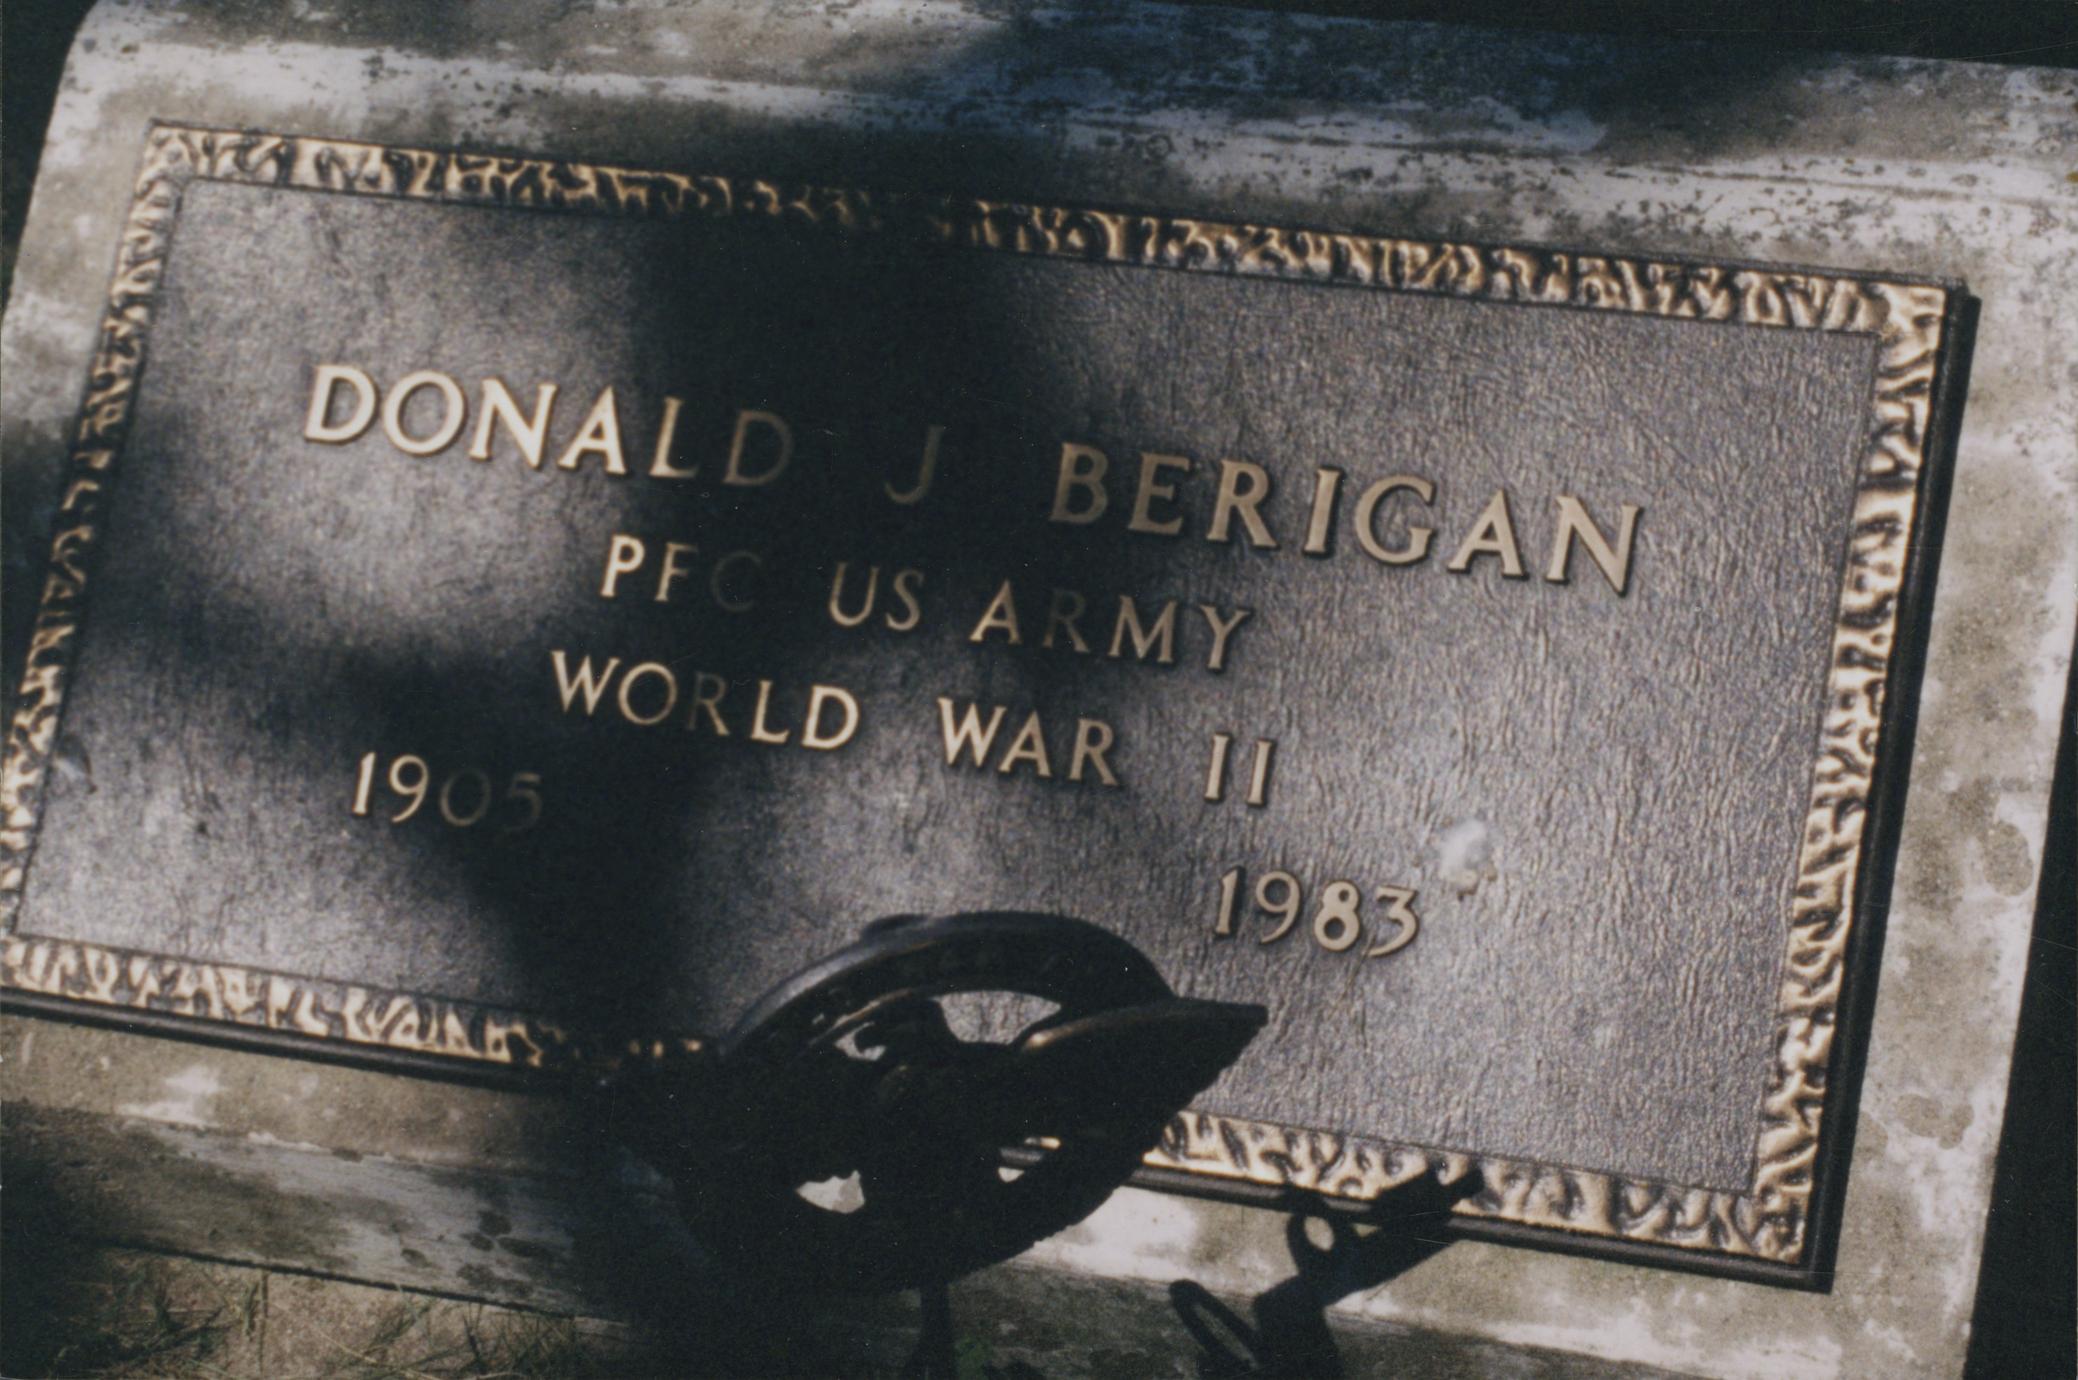 Donald Berigan's tombstone (1 of 2)